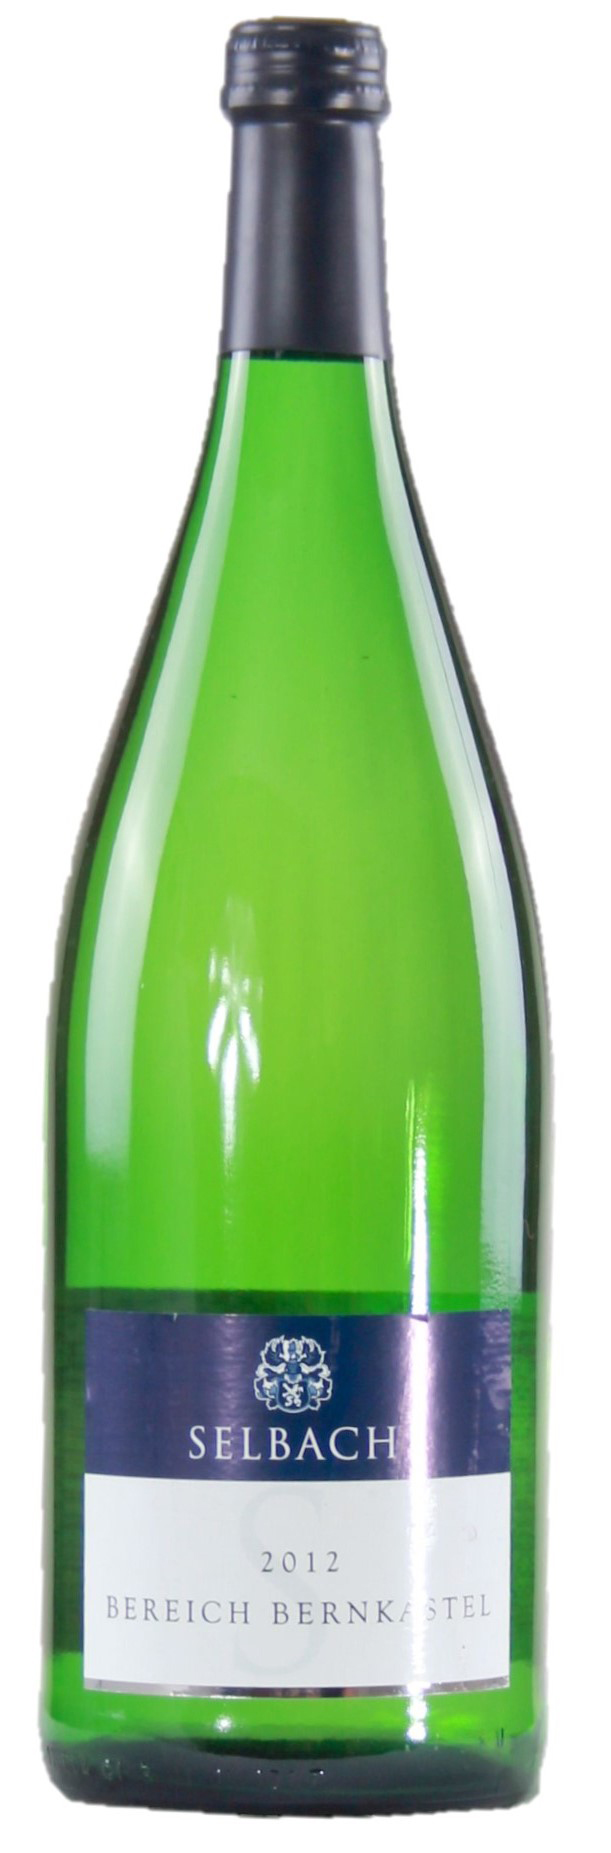 56018 Bernkastel zoete witte wijn 1 liter